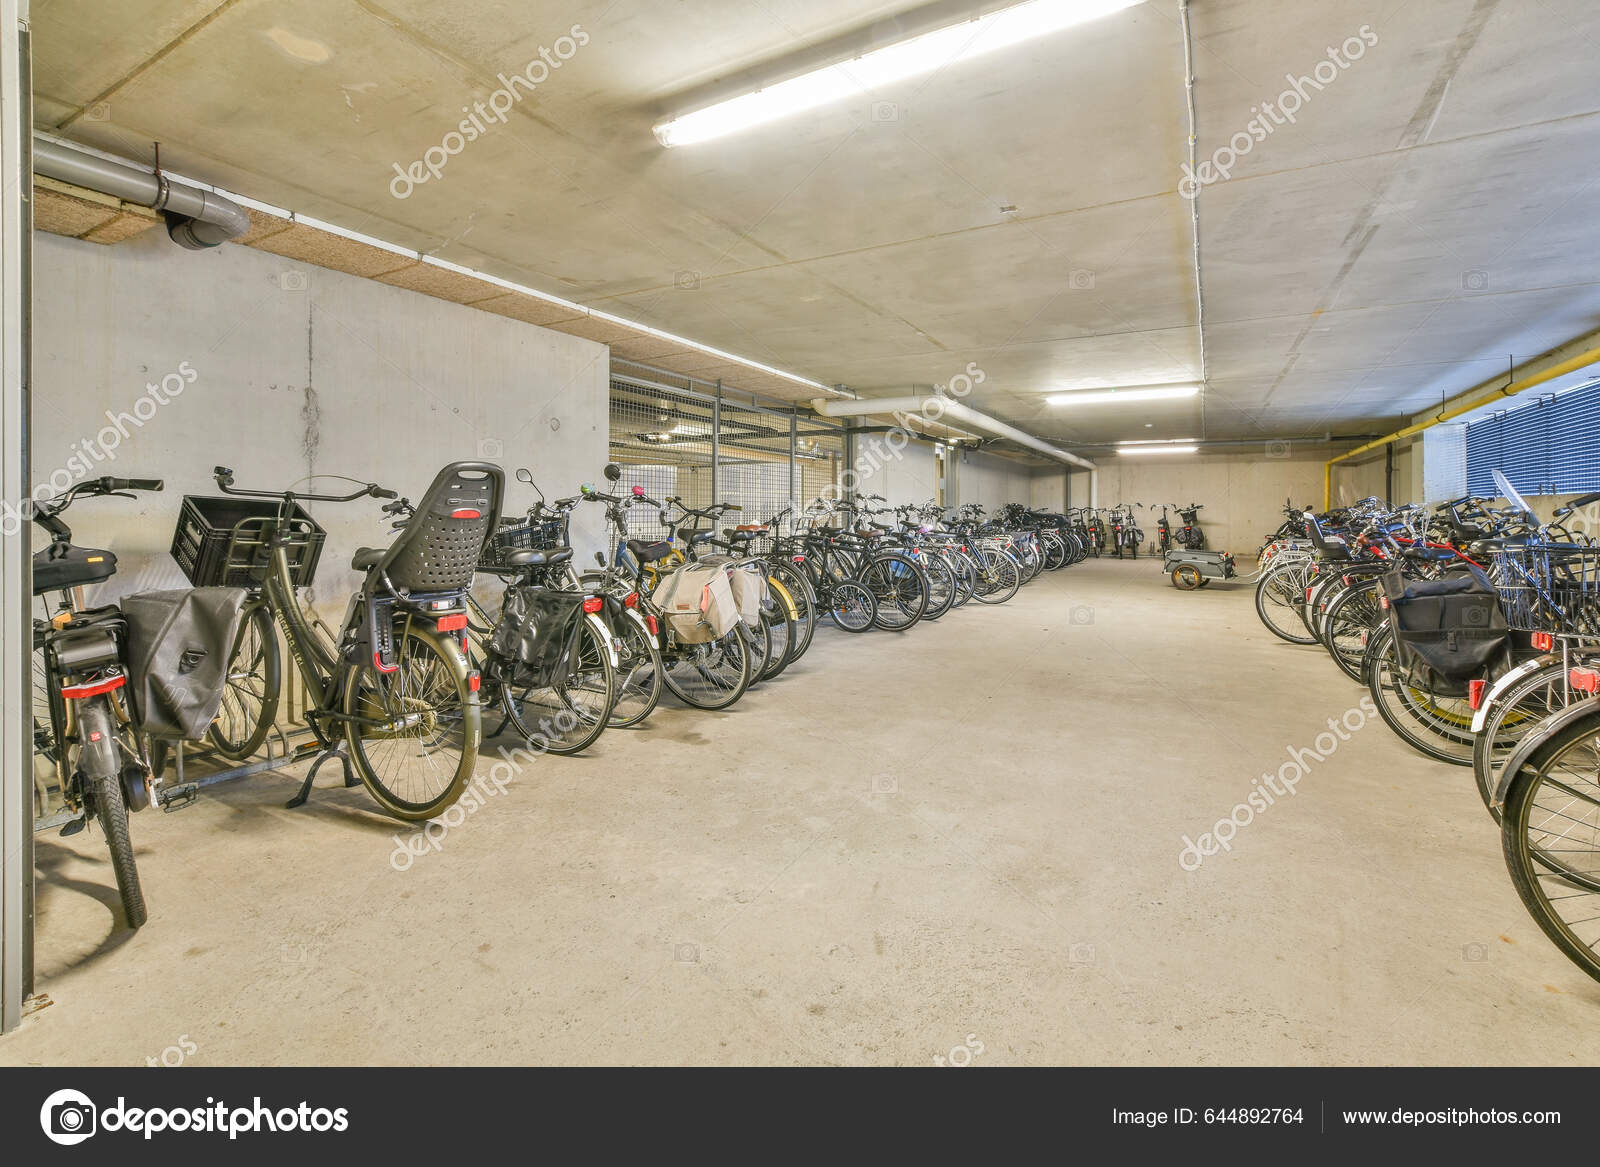 Άμστερνταμ Ολλανδία Απριλίου 2021 Πολλά Ποδήλατα Σταθμευμένα Ένα Χώρο  Στάθμευσης – Εκδοτική Εικόνα Αρχείου © procontributors #644892764